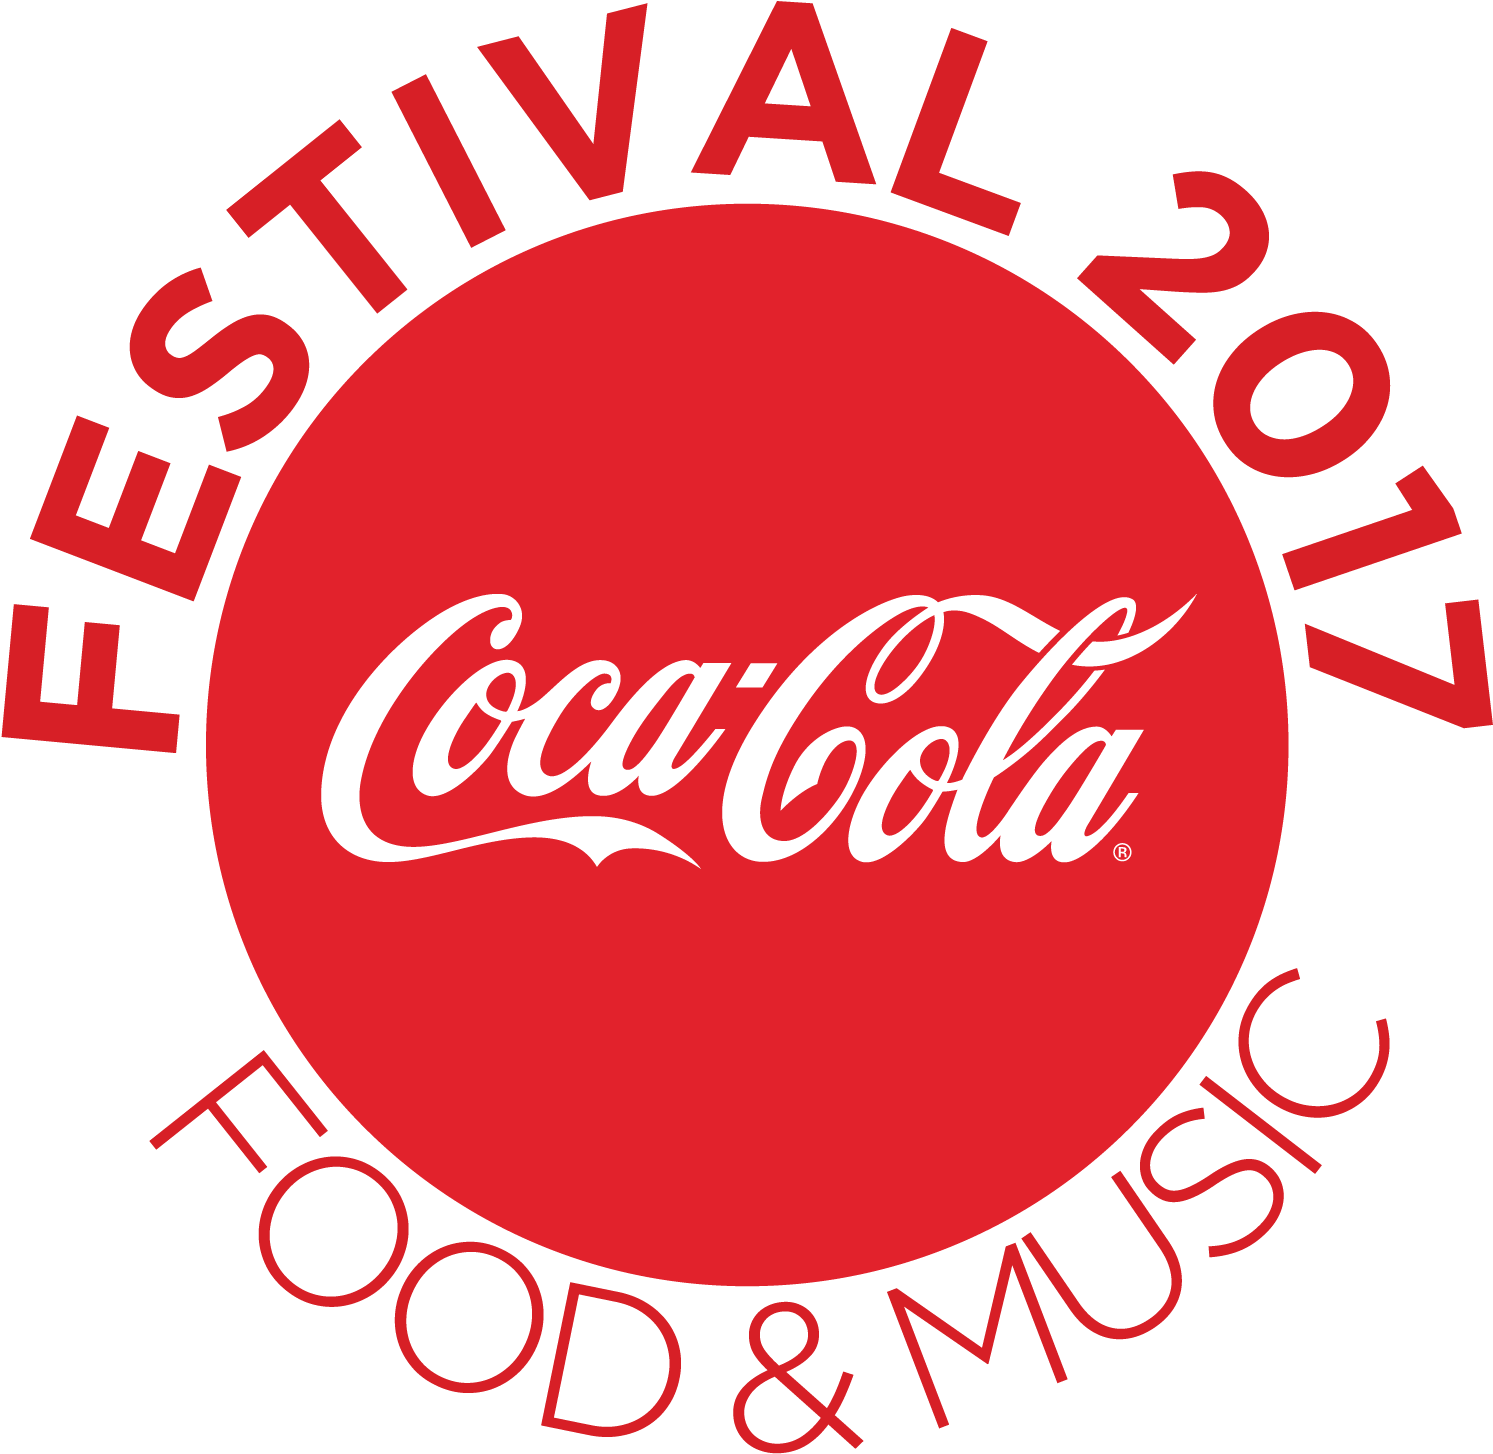 Coca-cola - Coke Festival 2018 Karachi (2194x1667), Png Download